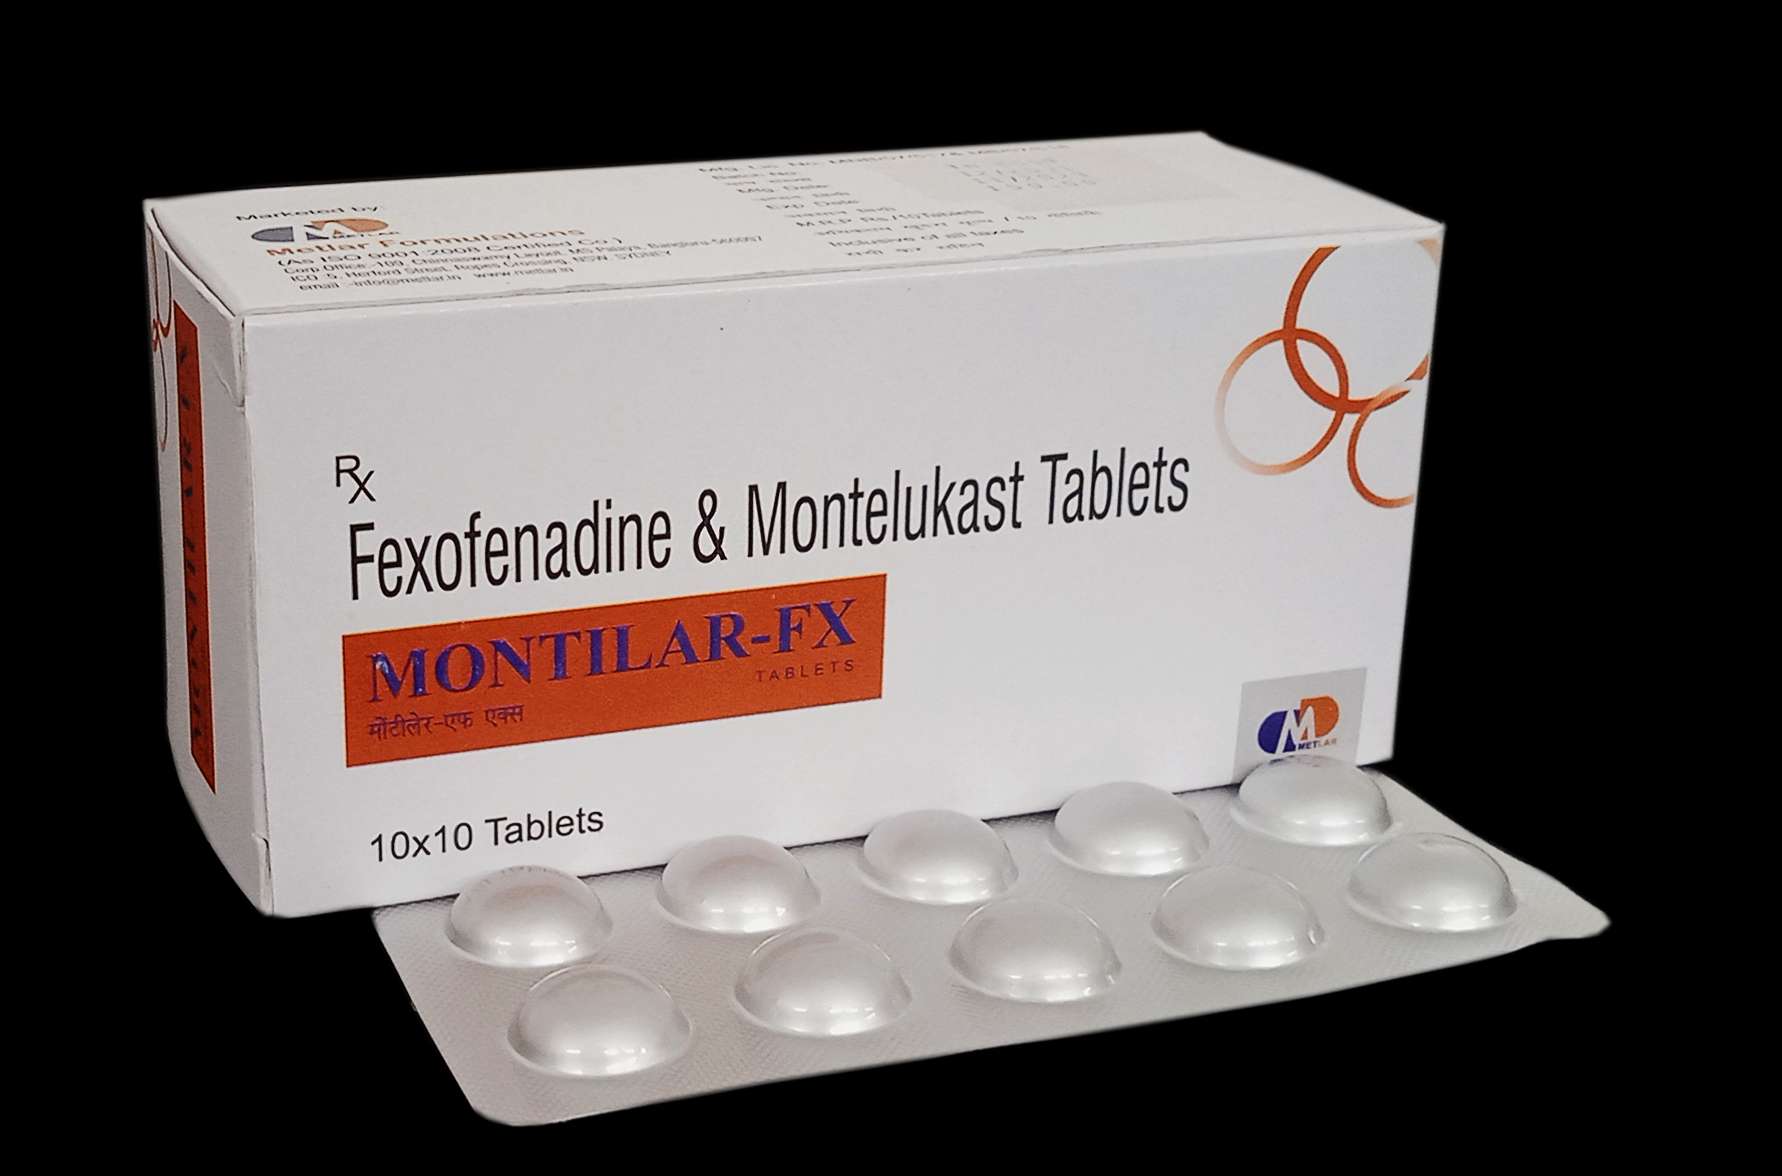 fexofenadine 120 mg+ montelukast 10mg